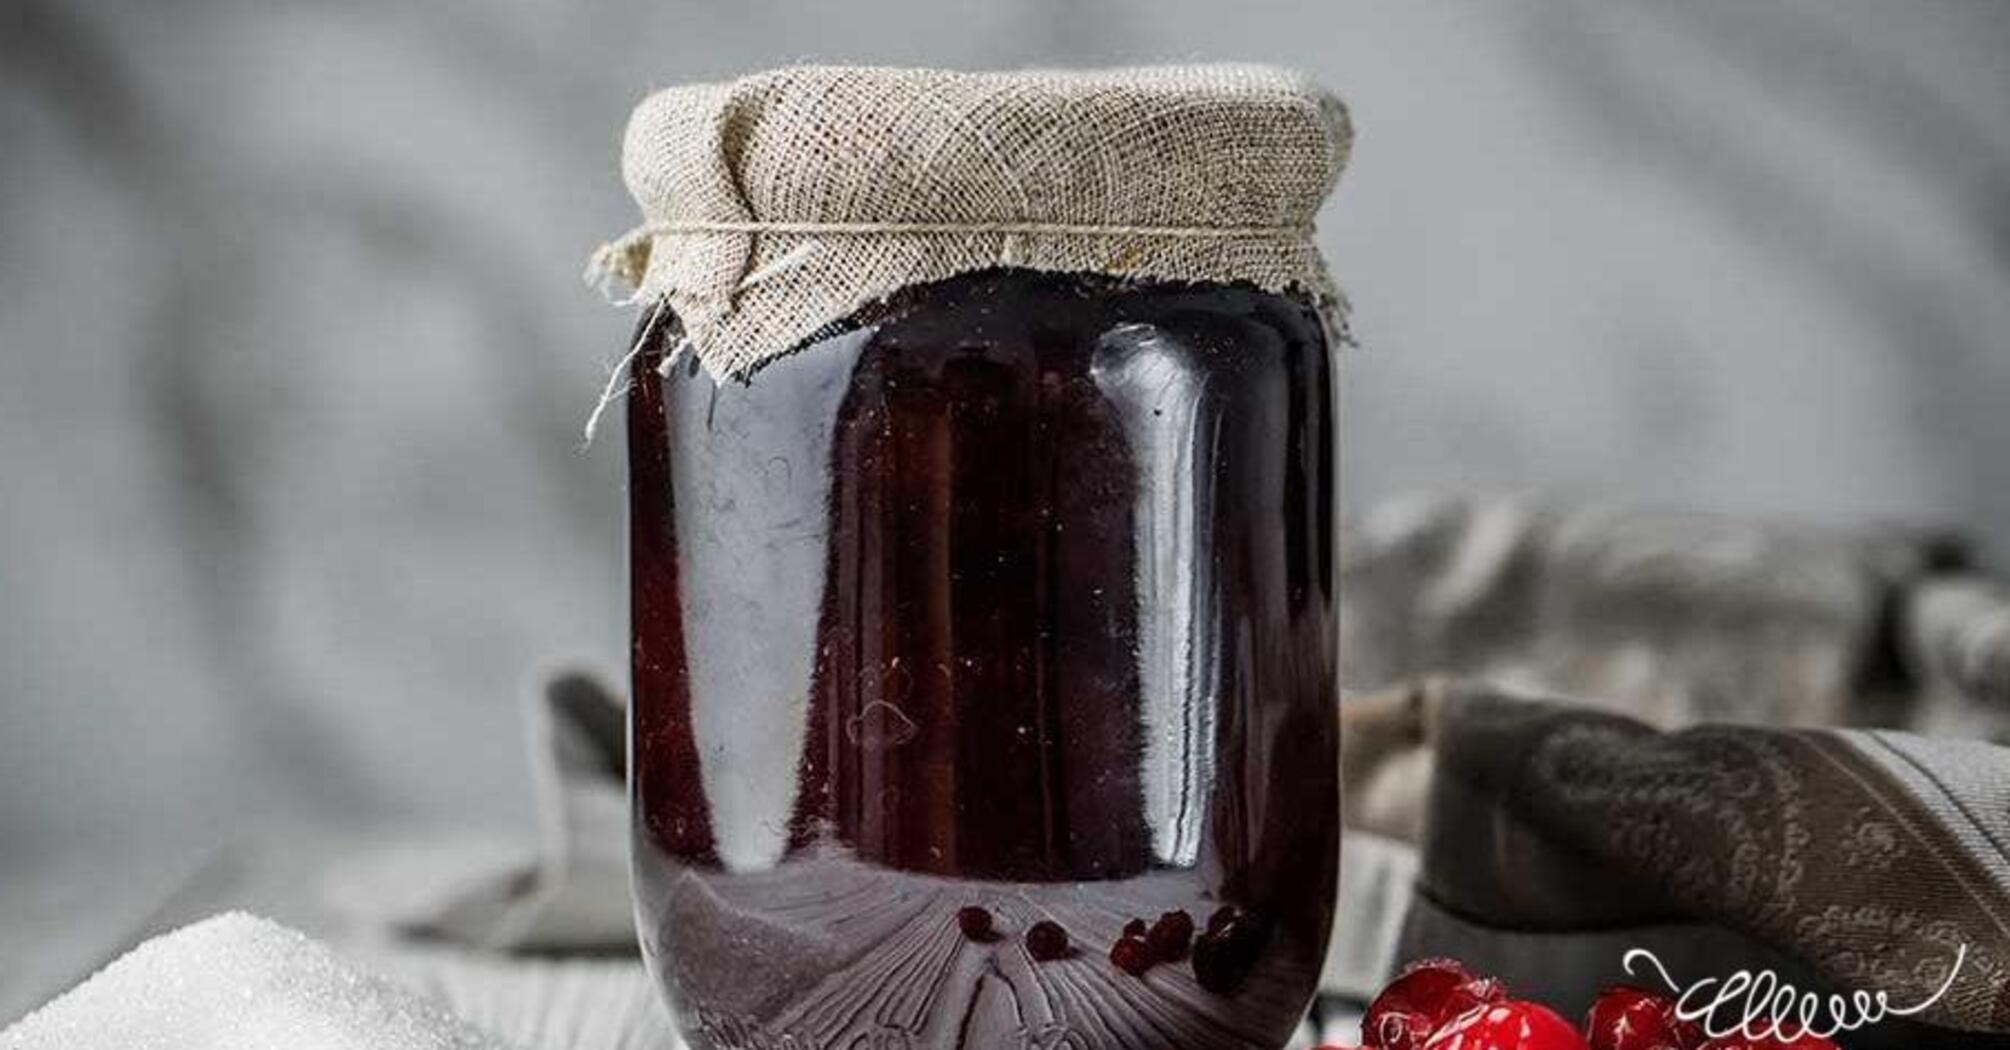 Blackcurrant jam recipe